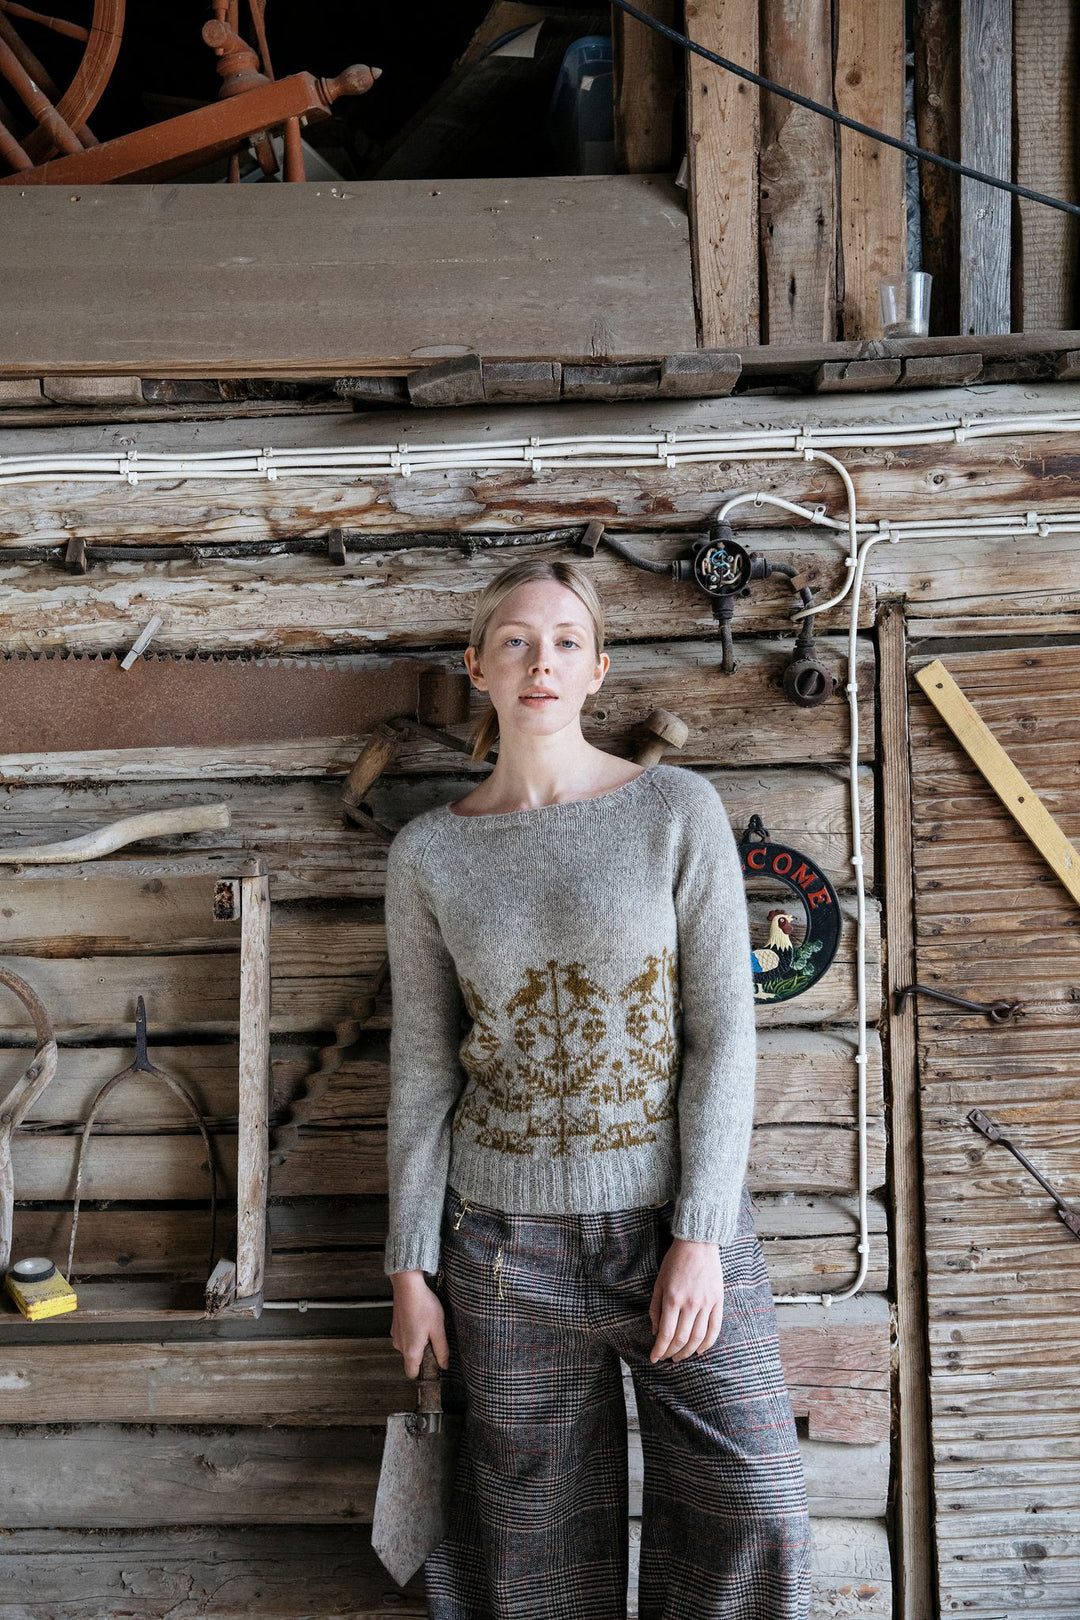 Knitted Kalevala by Jenna Kostet